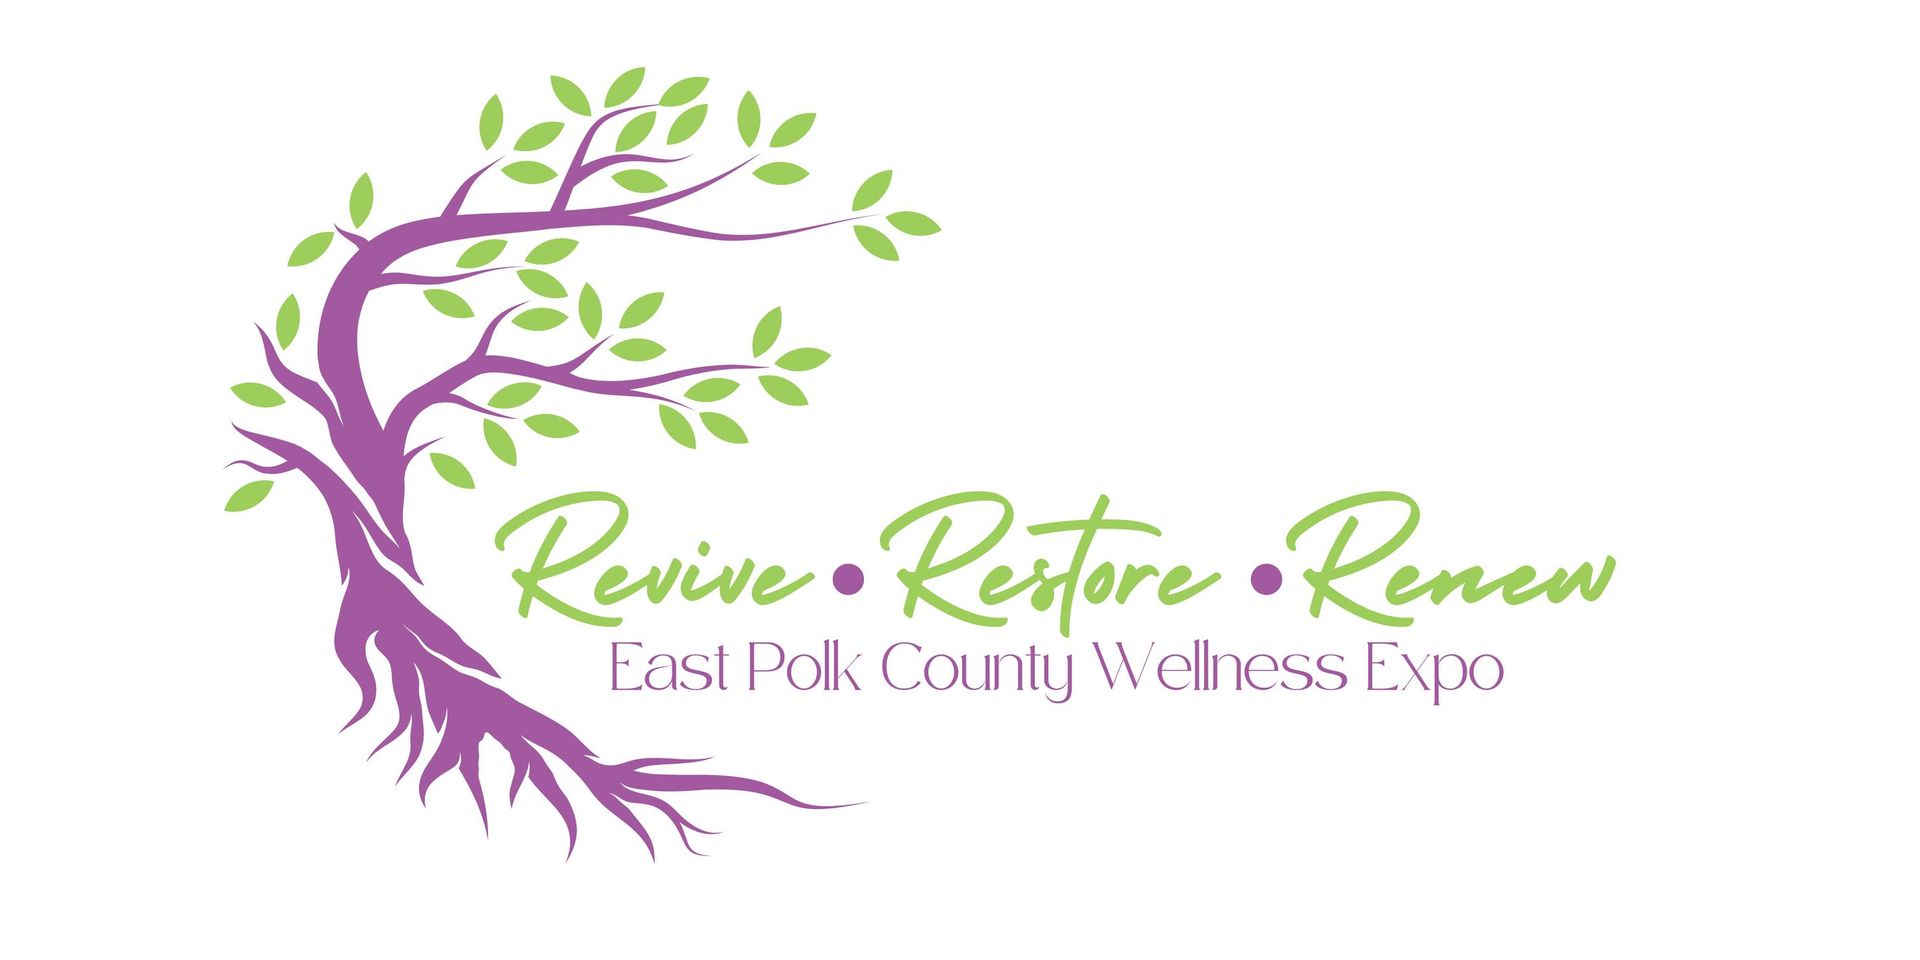 East Polk County Wellness Expo